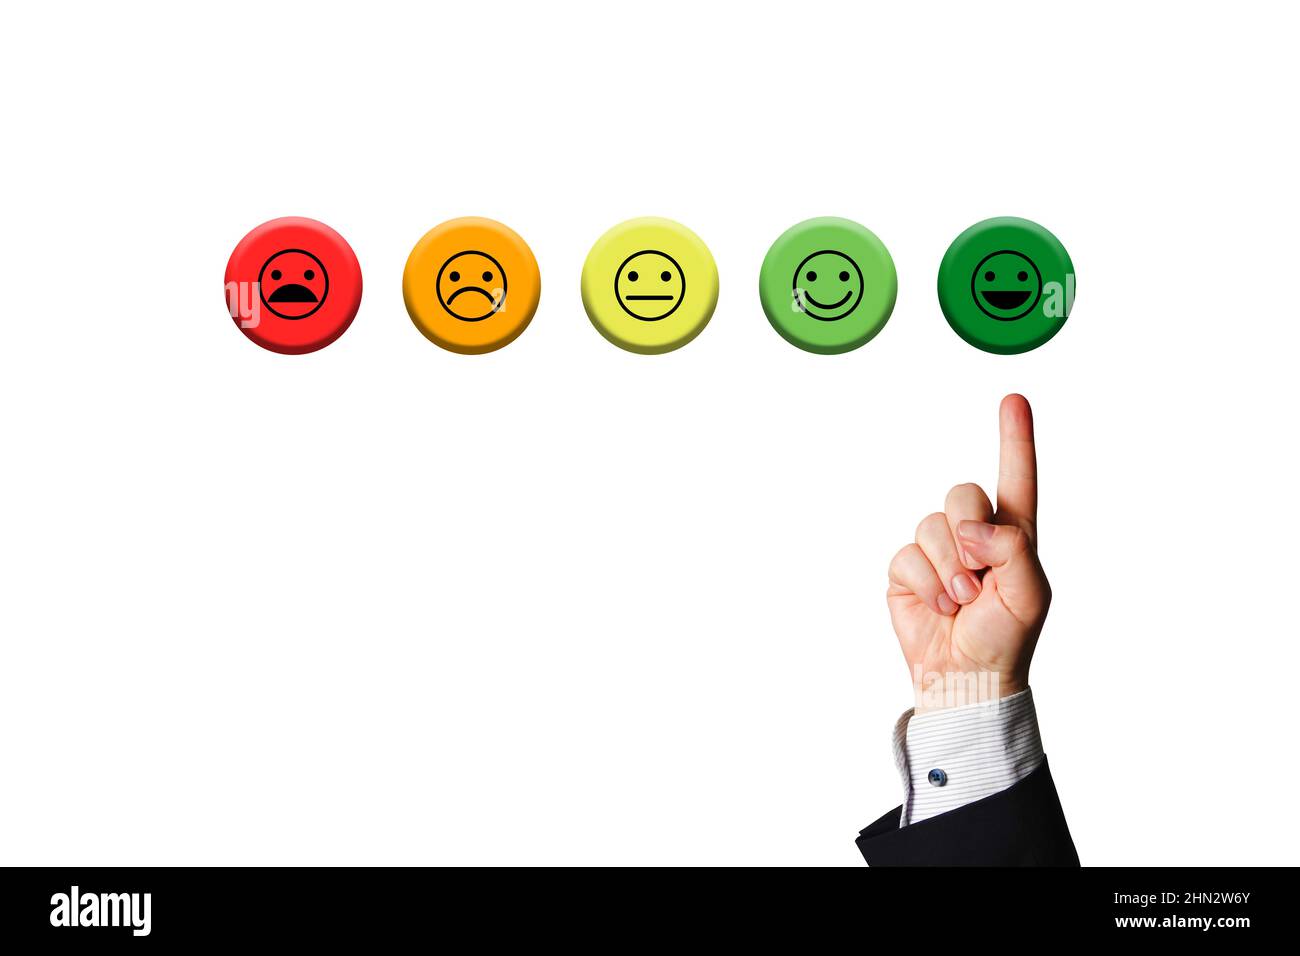 Cliente o dipendente o Stausfazione dell'azienda. Cinque smileys con smiley verde puntato dalla mano dell'uomo d'affari, che simboleggia un obiettivo o un risultato. Foto Stock